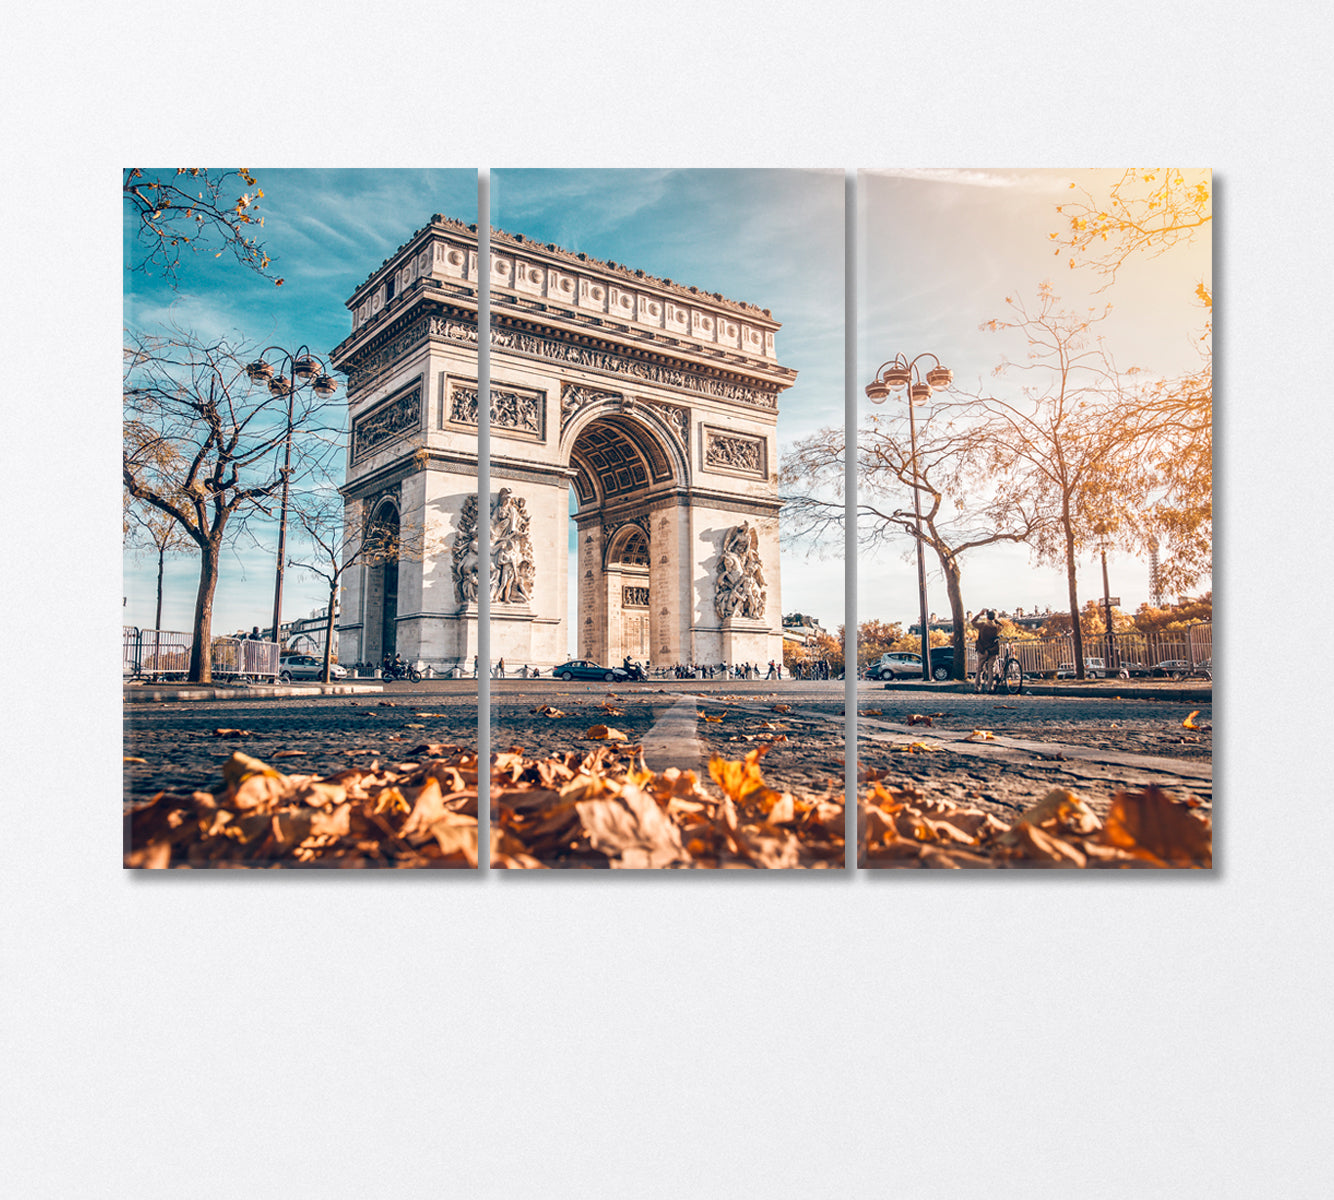 Arc De Triomphe Golden Autumn in Paris Canvas Print-Canvas Print-CetArt-3 Panels-36x24 inches-CetArt